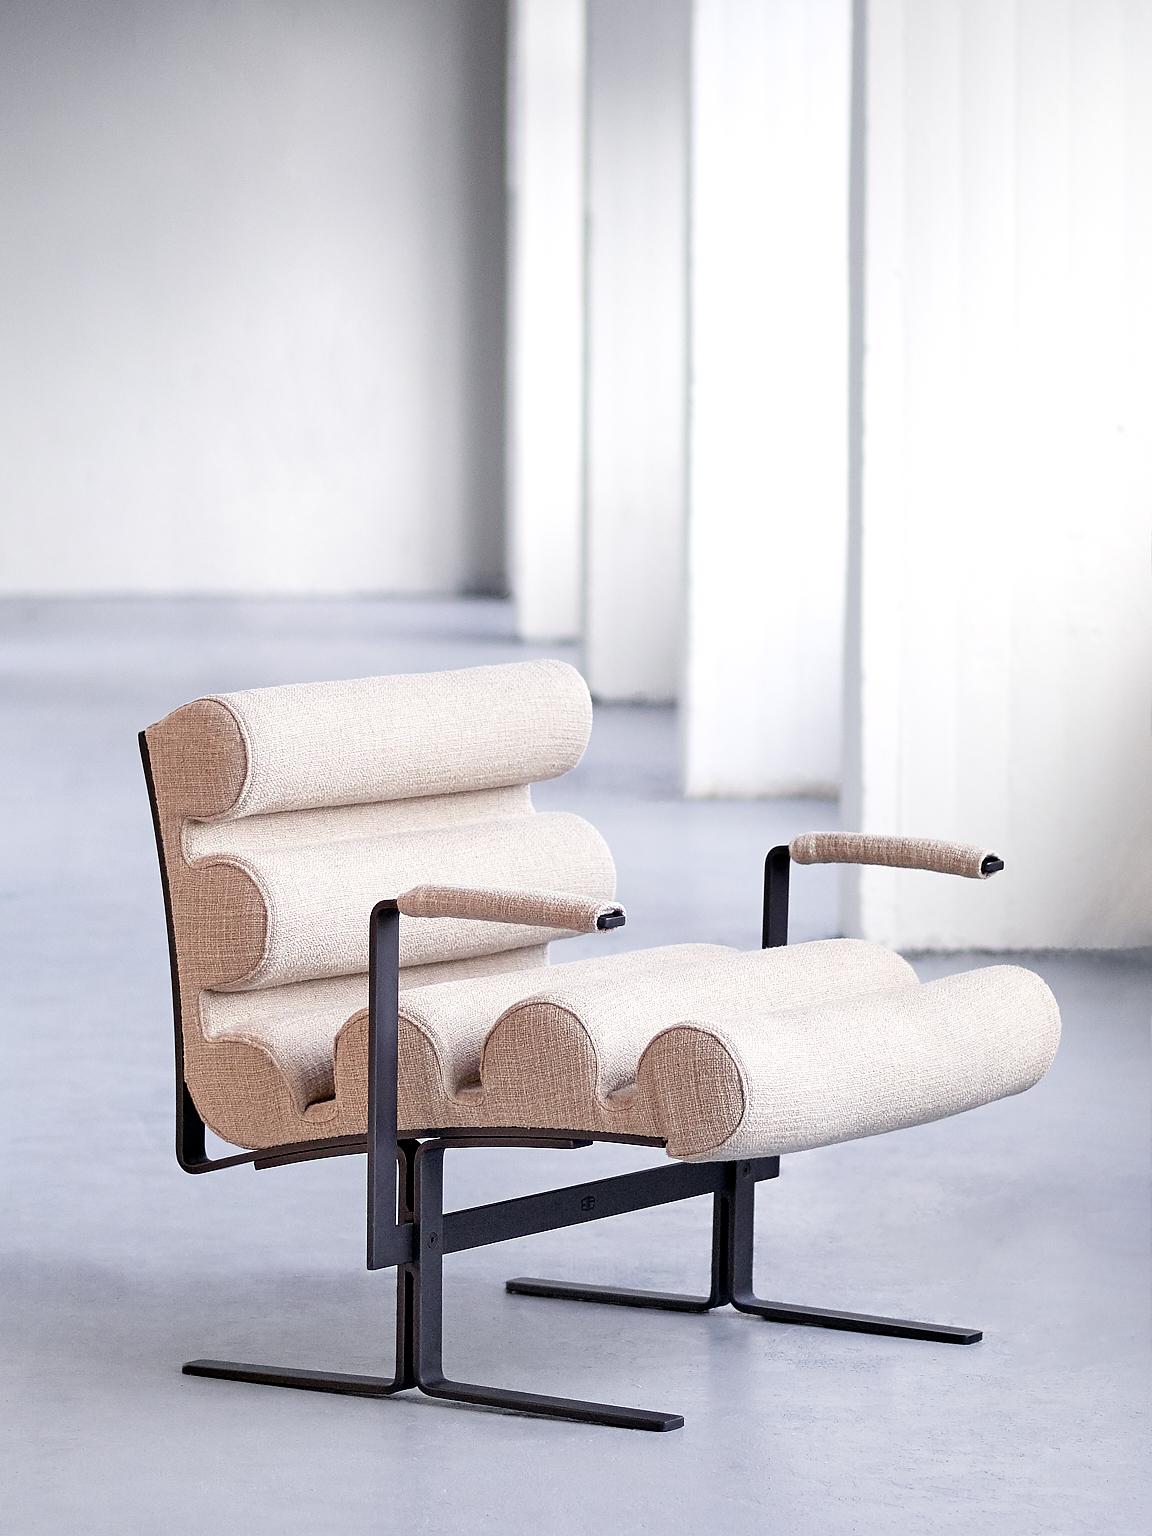 Ce fauteuil rare a été conçu par l'emblématique designer italien Joe Colombo et a été nommé le fauteuil 